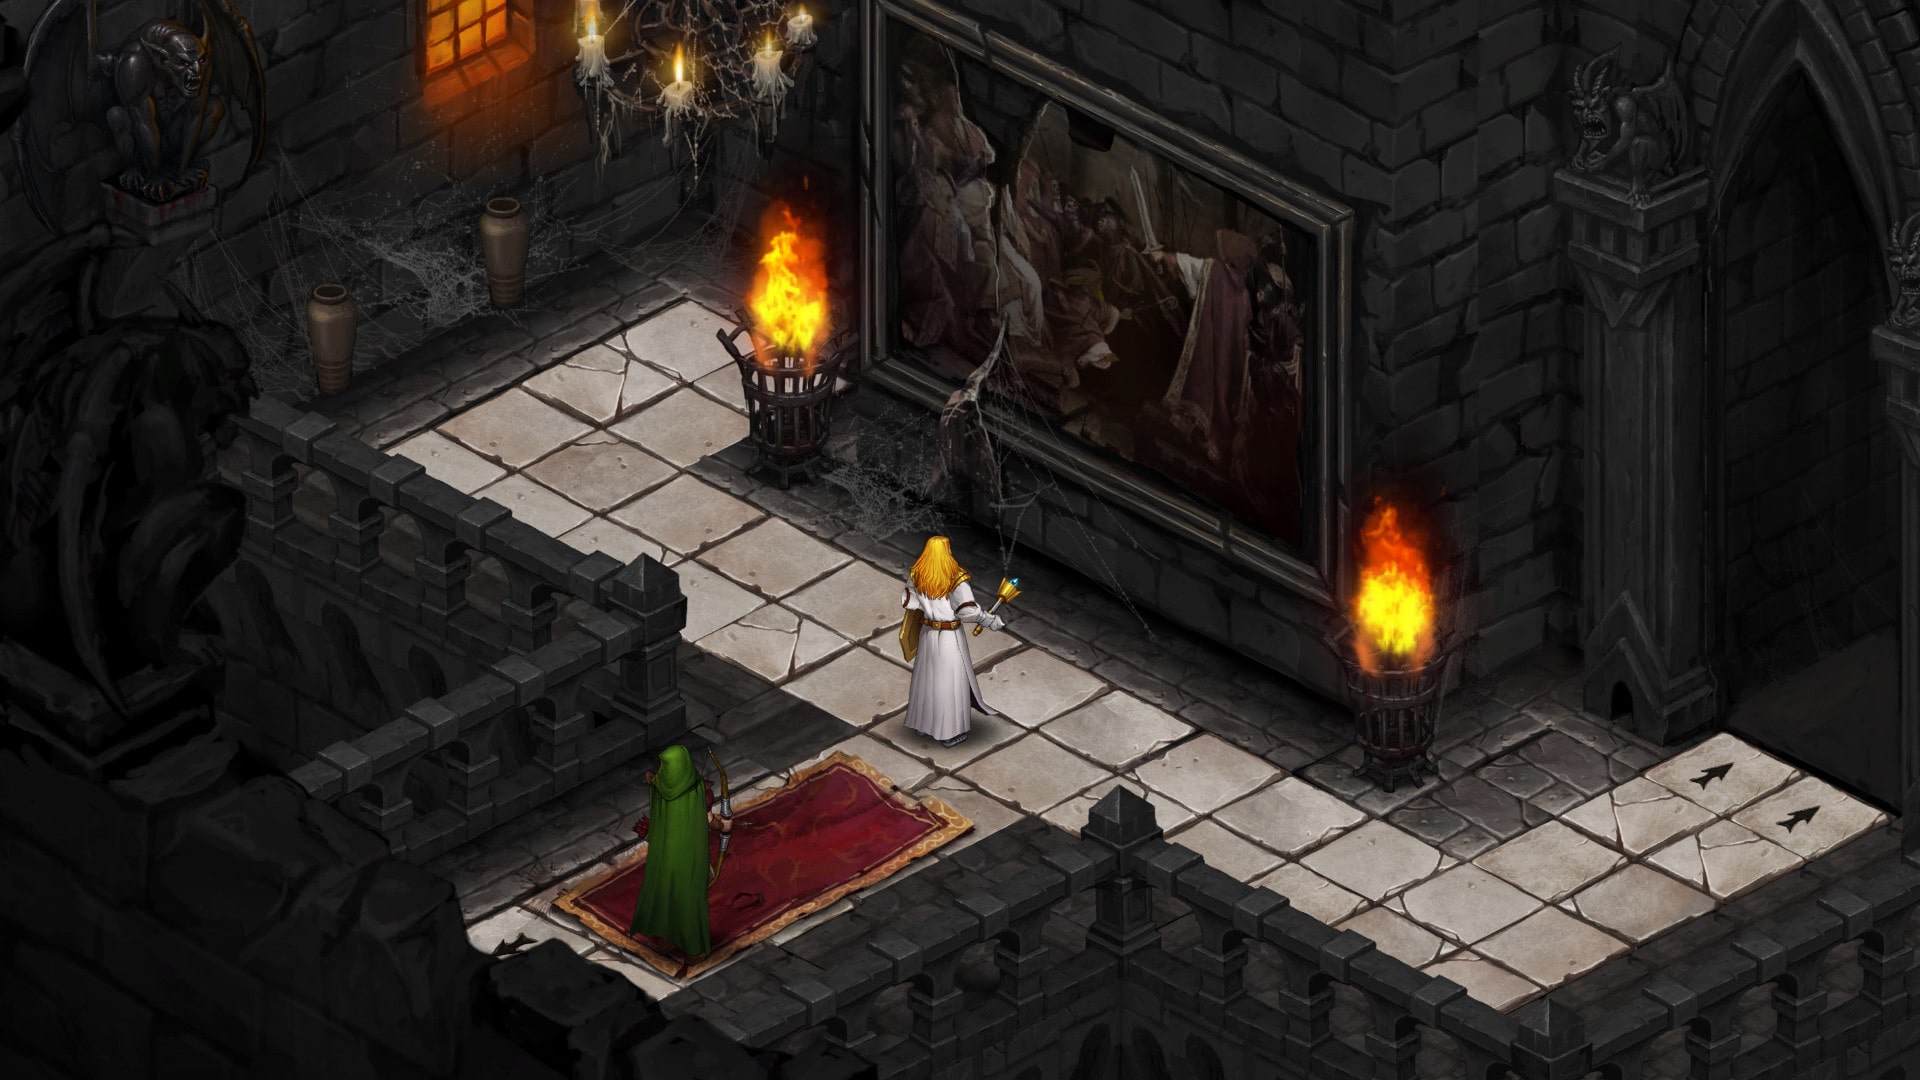 Dark Quest 2 (PC) promete trazer estratégia e dungeons em ótimo